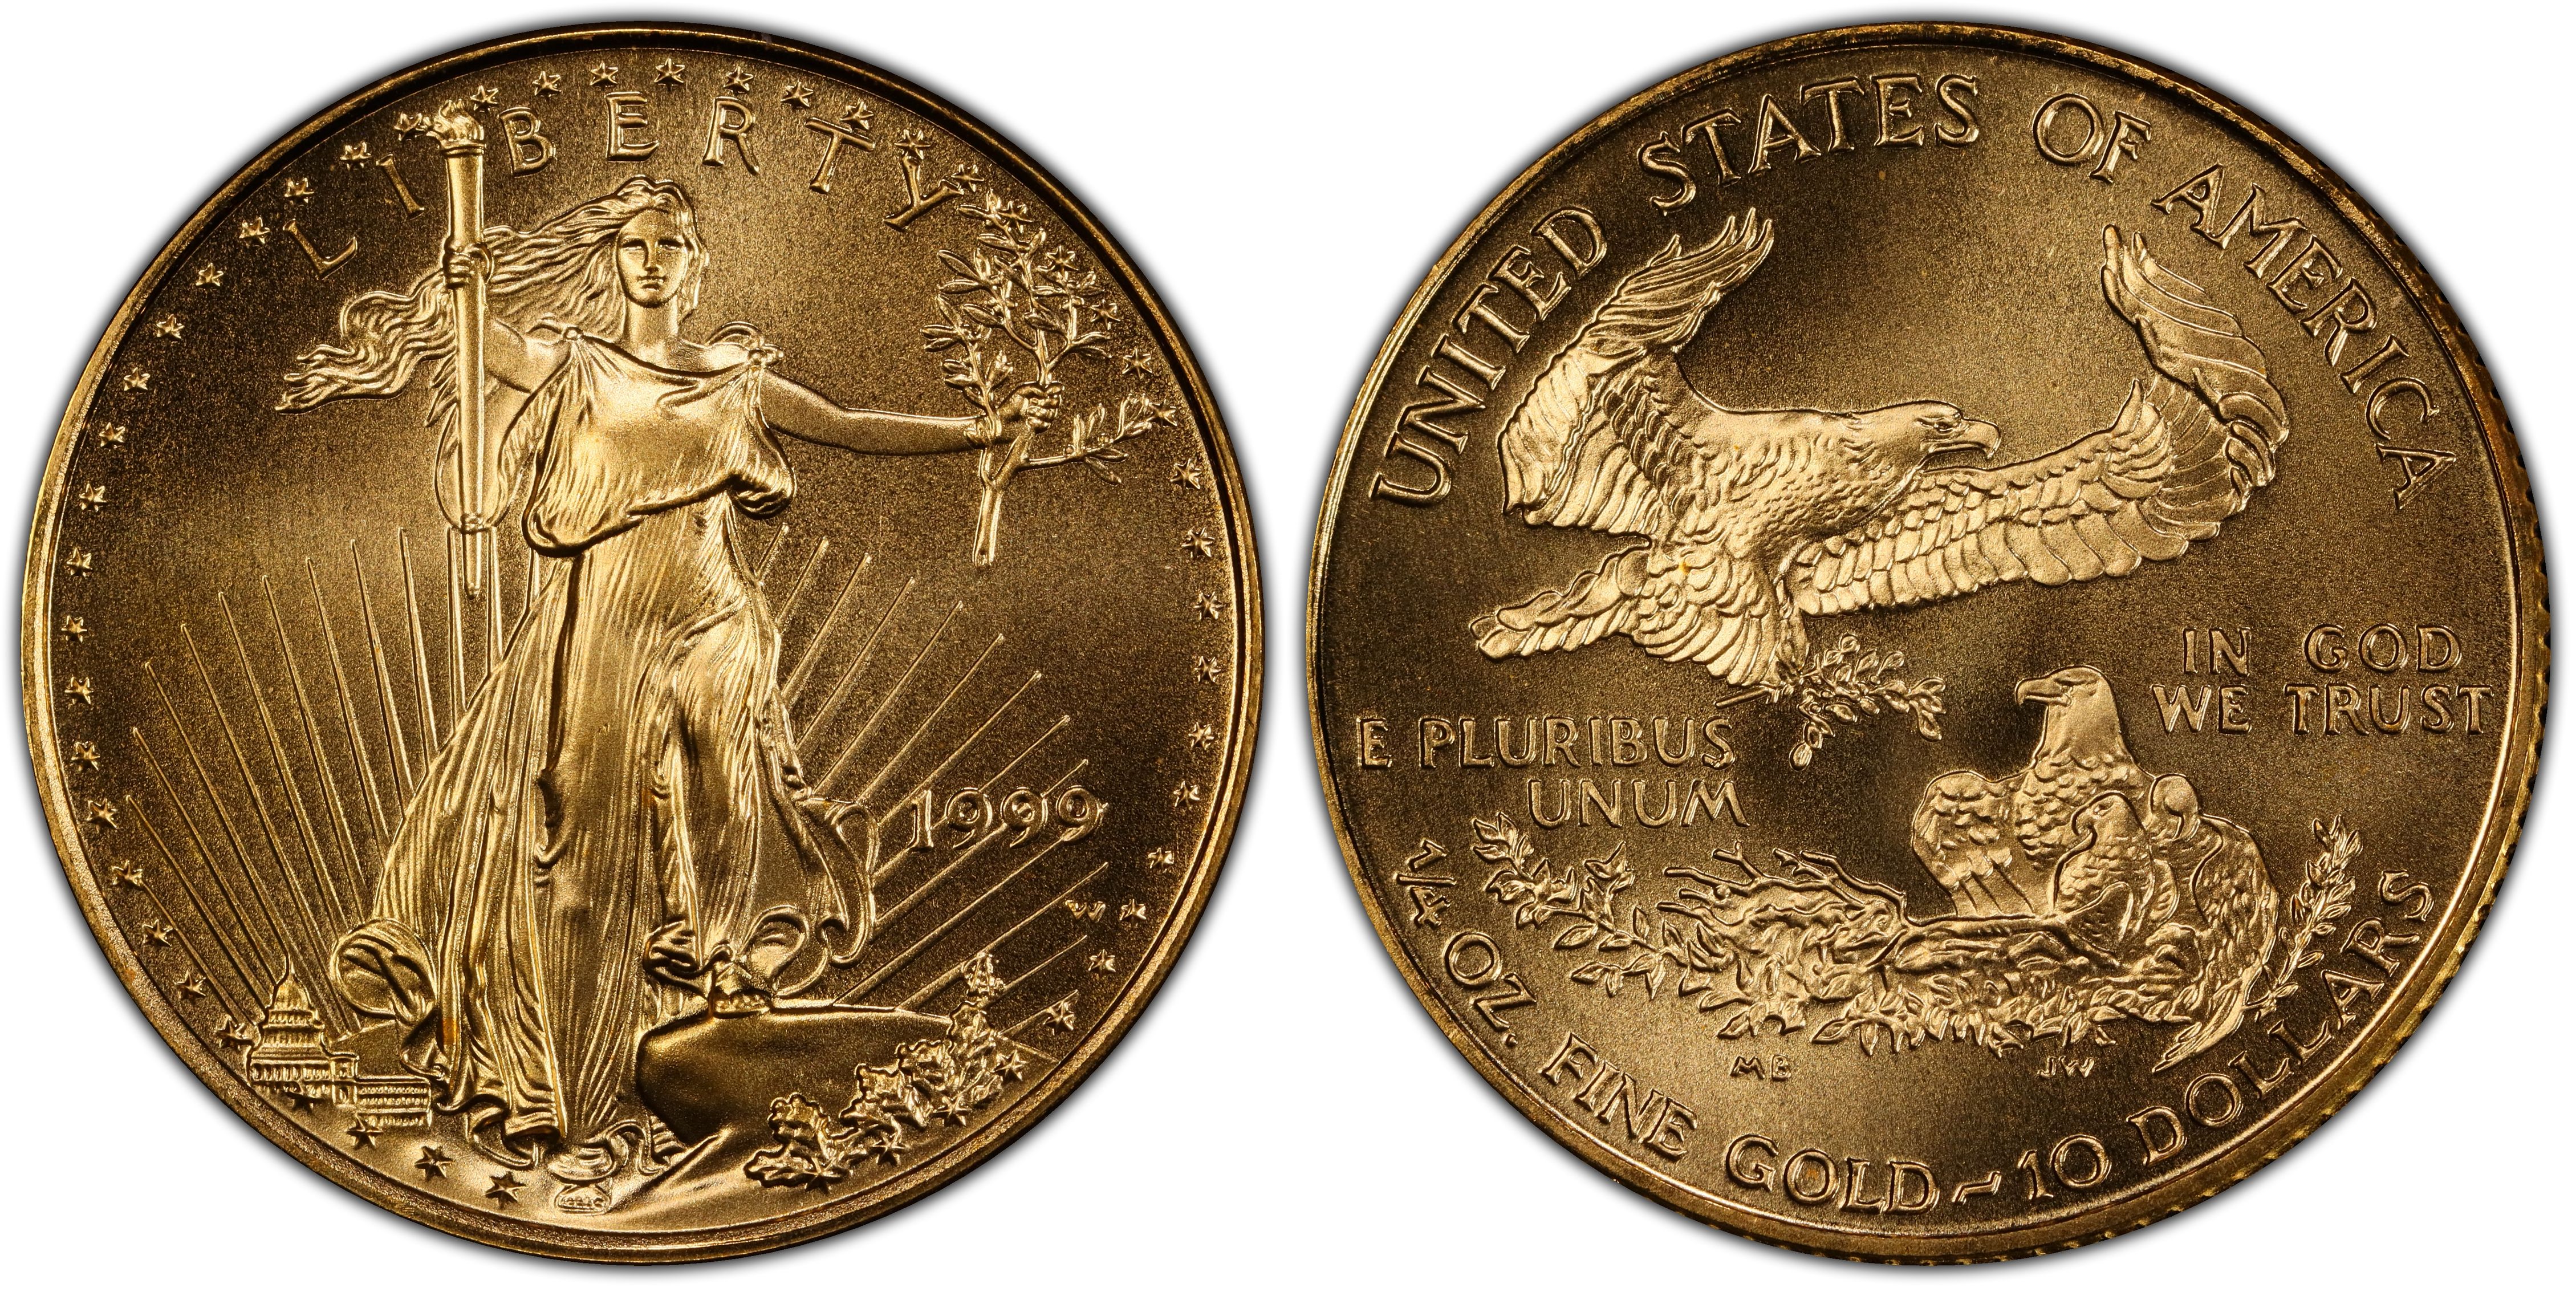 1999-W $10 Unfinished Proof Dies Gold Eagle (Regular Strike) Gold